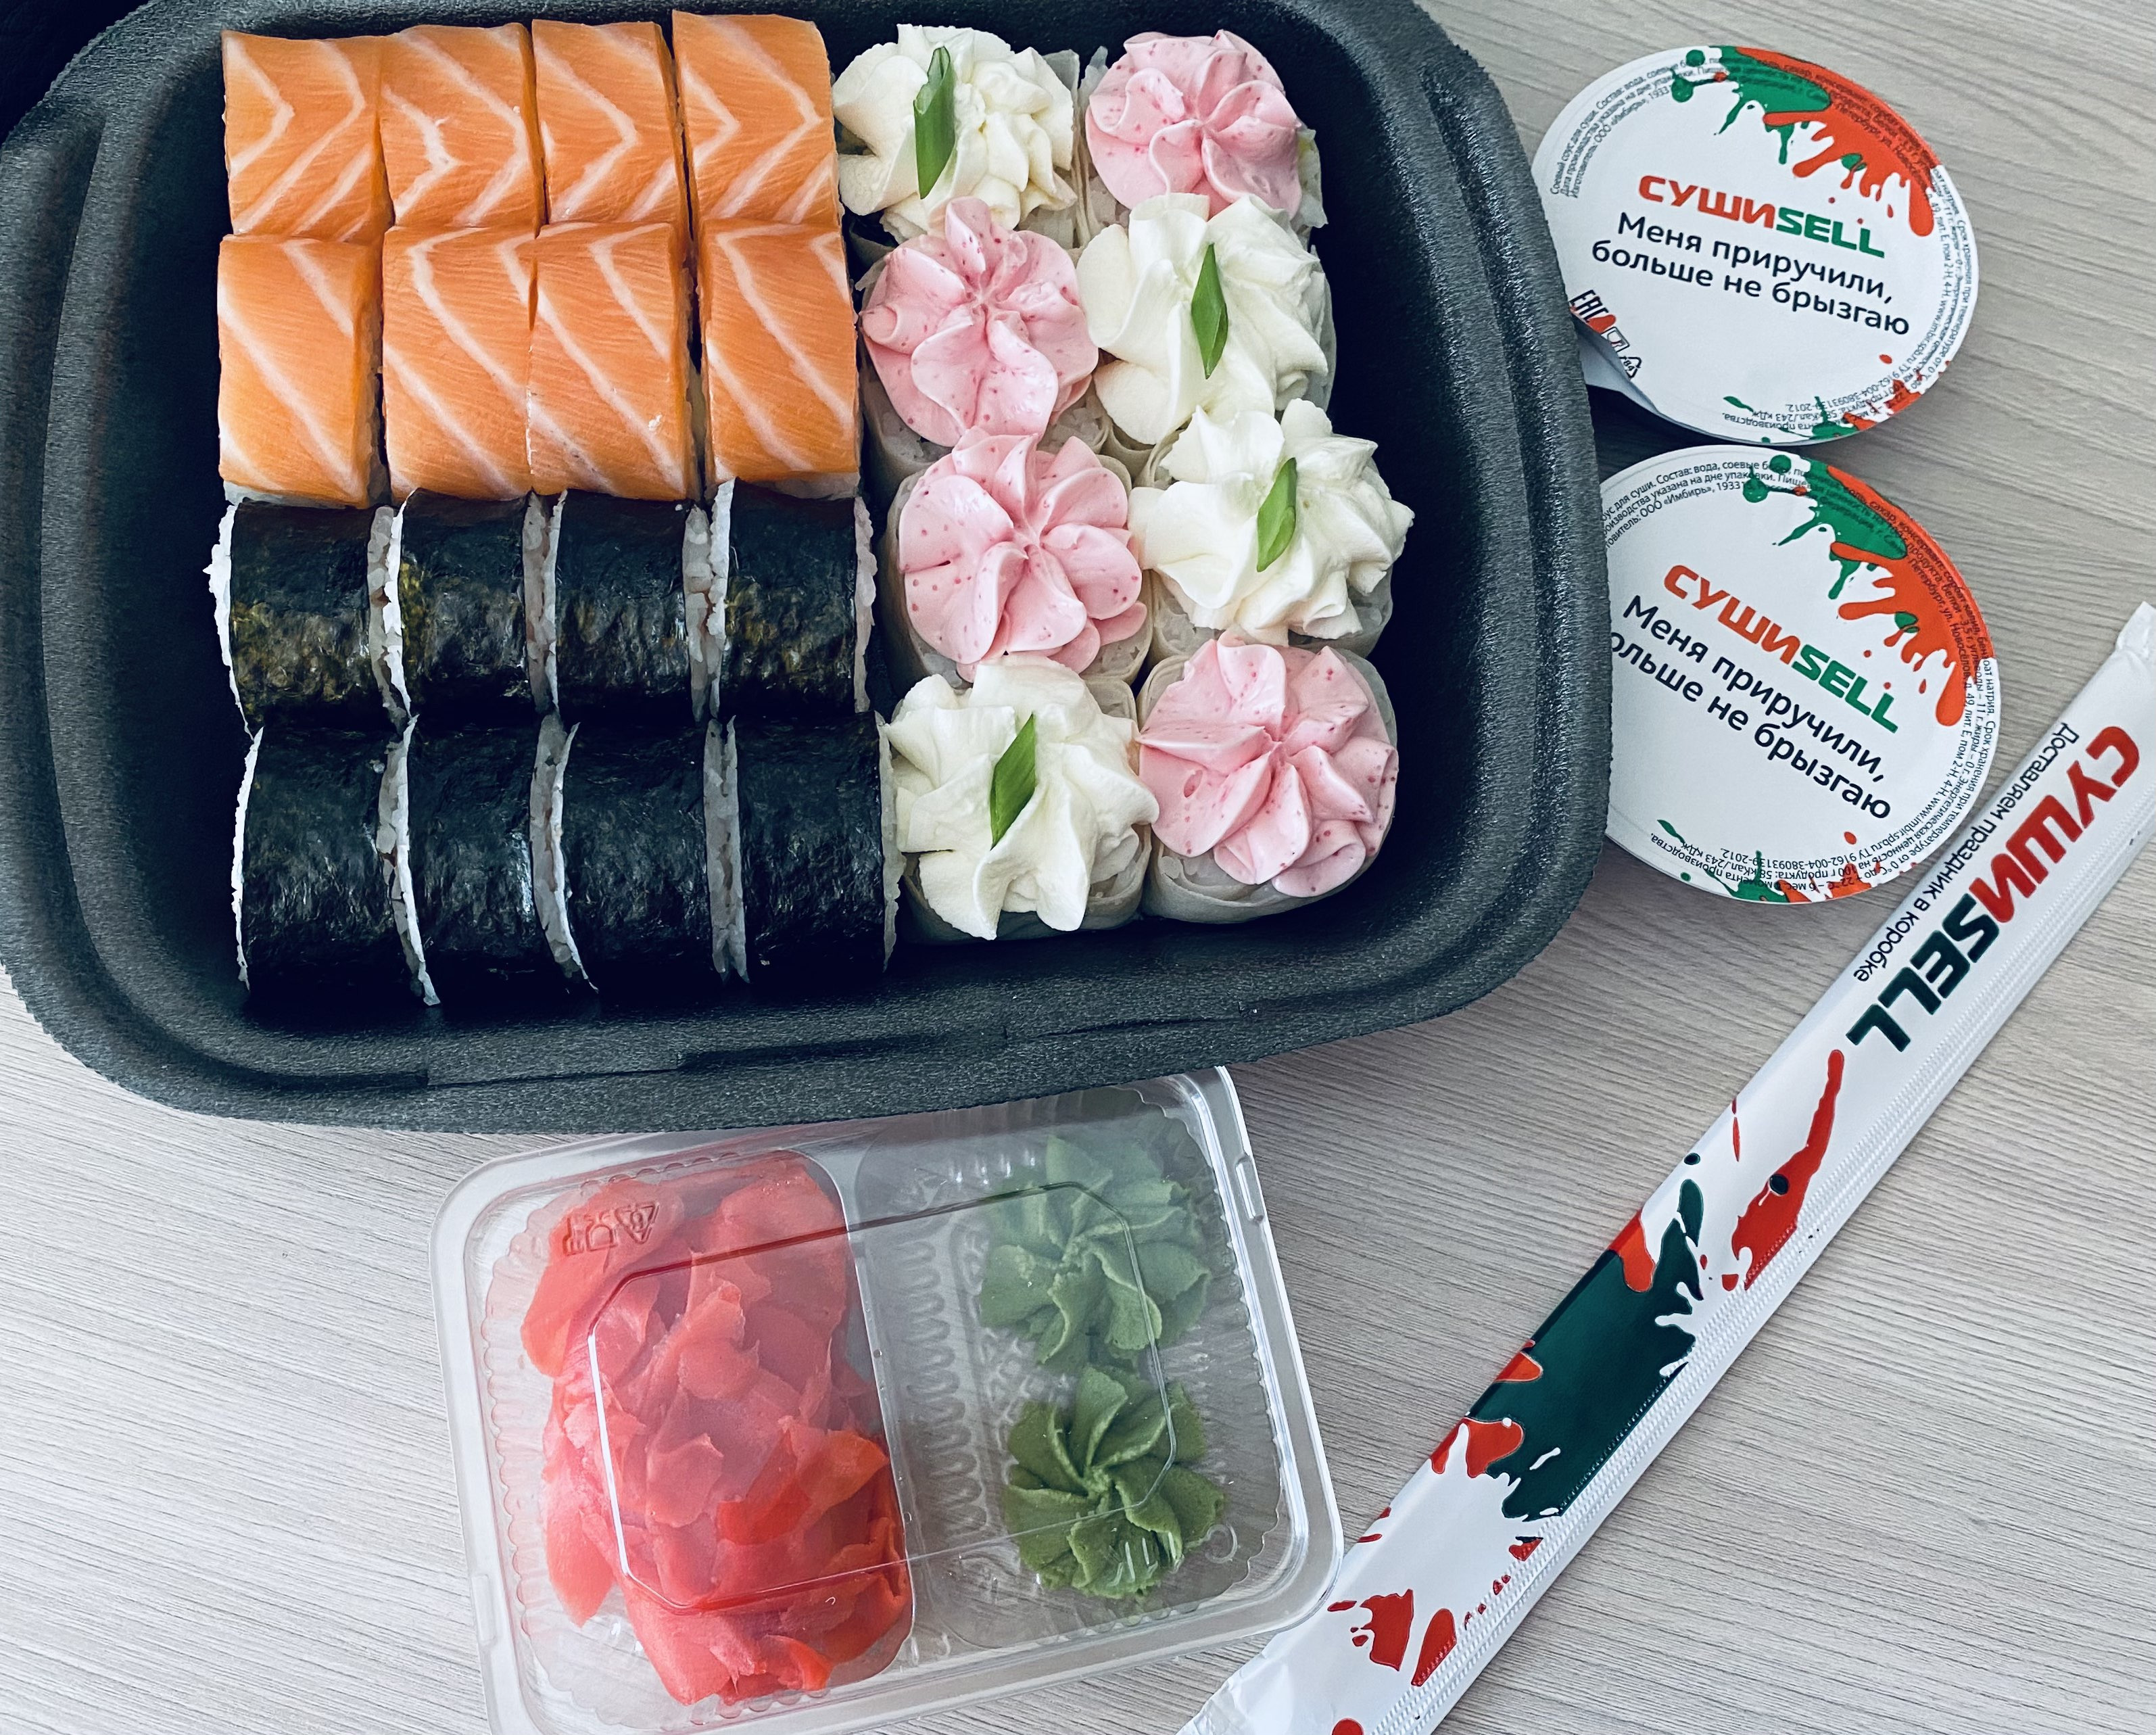 Самые вкусные суши доставка в красноярске отзывы фото 117